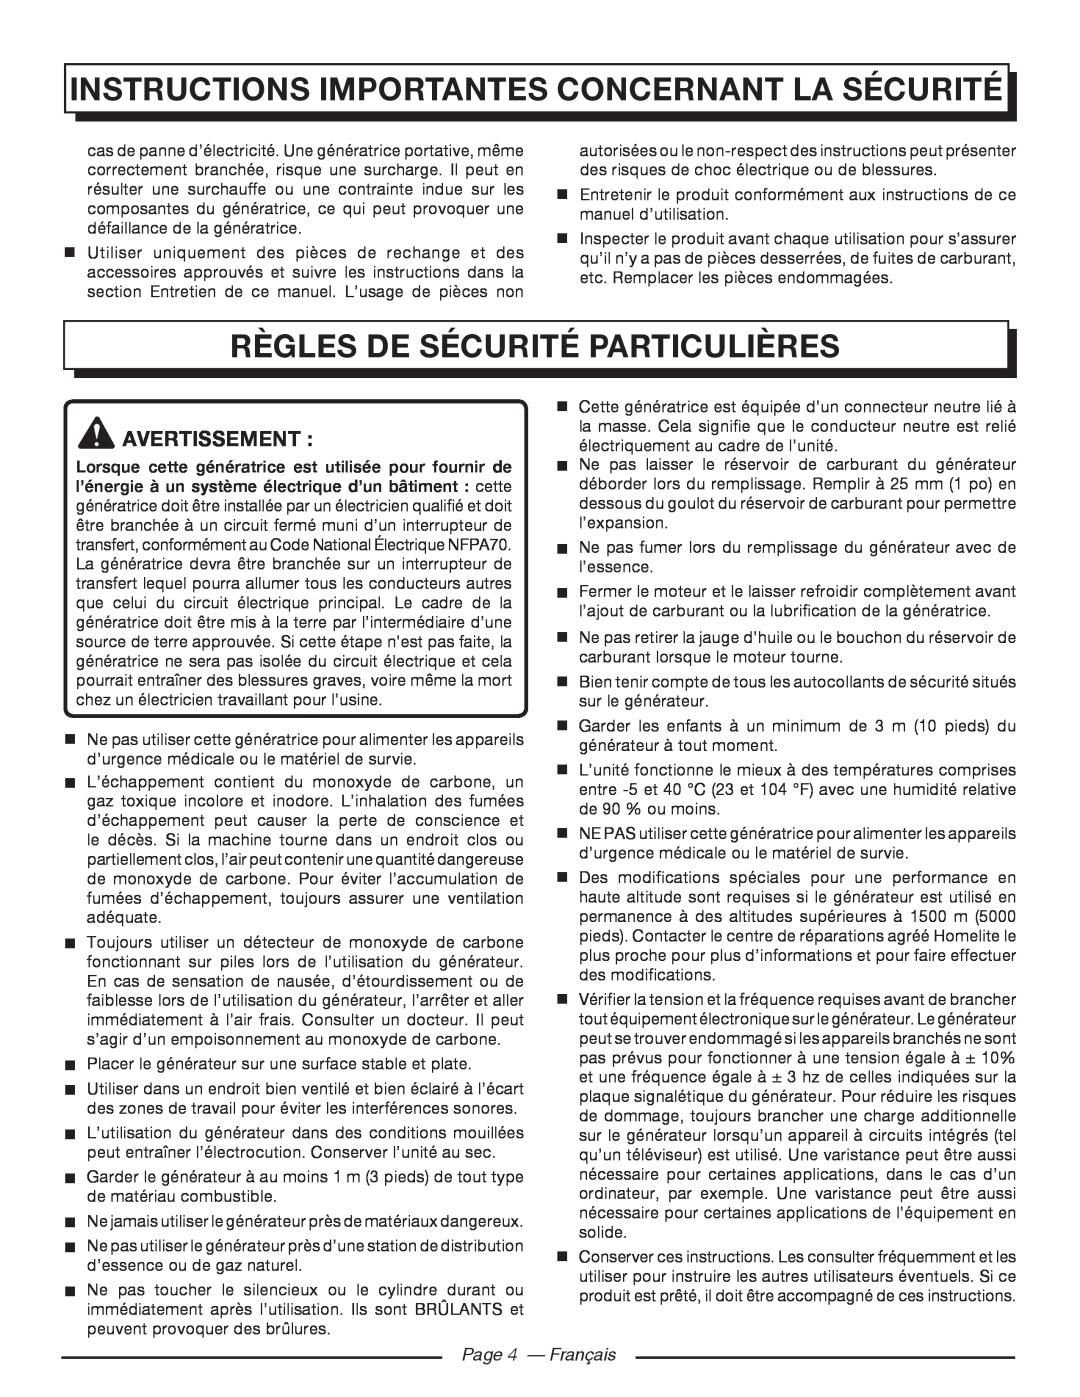 Homelite HGCA5000 Règles De Sécurité Particulières, Page 4 - Français, Instructions Importantes Concernant La Sécurité 